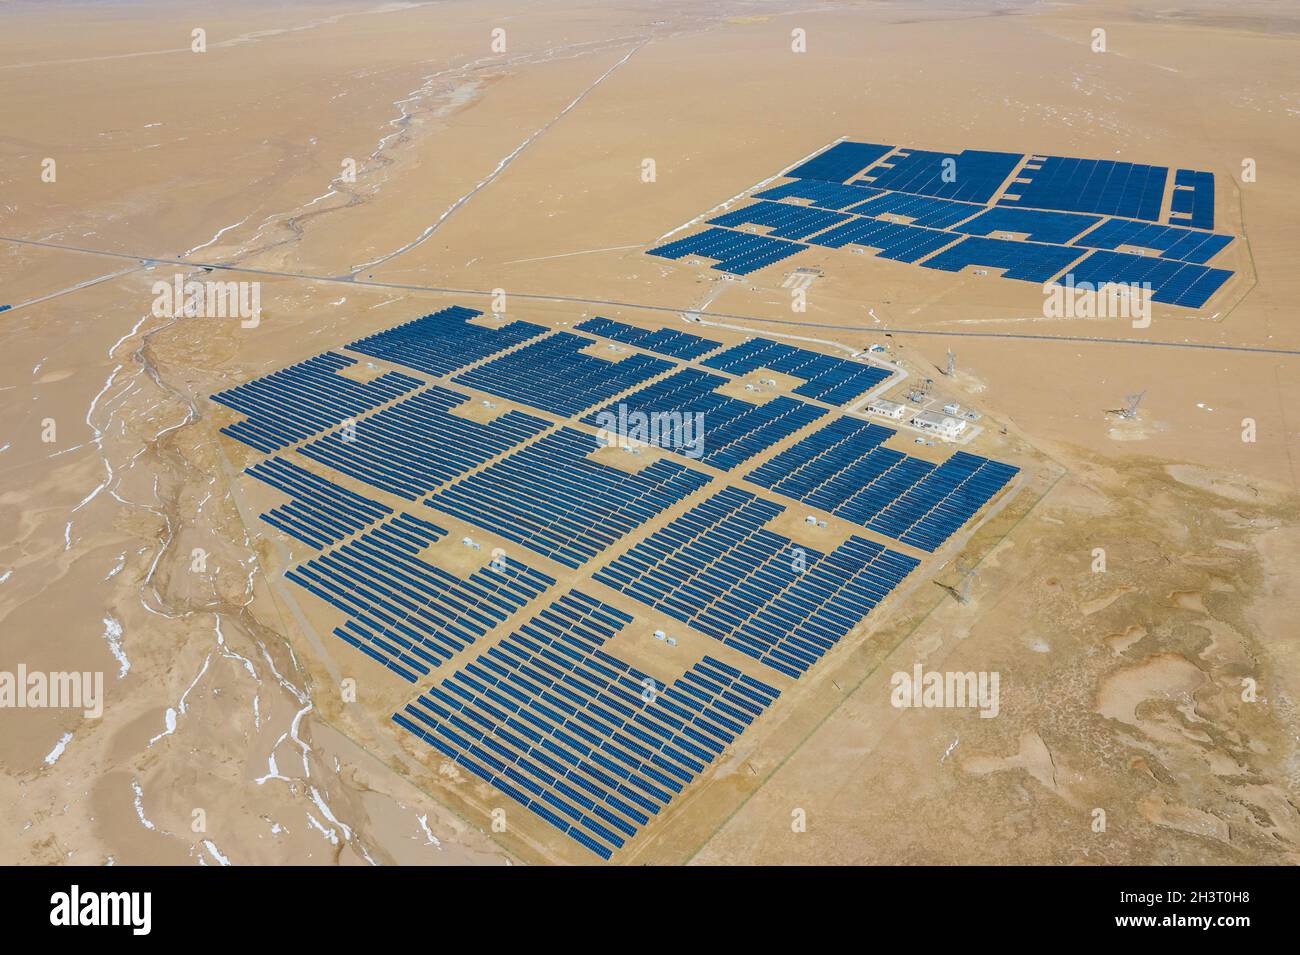 La scena delle centrali solari nell'altopiano tibetano settentrionale Foto Stock